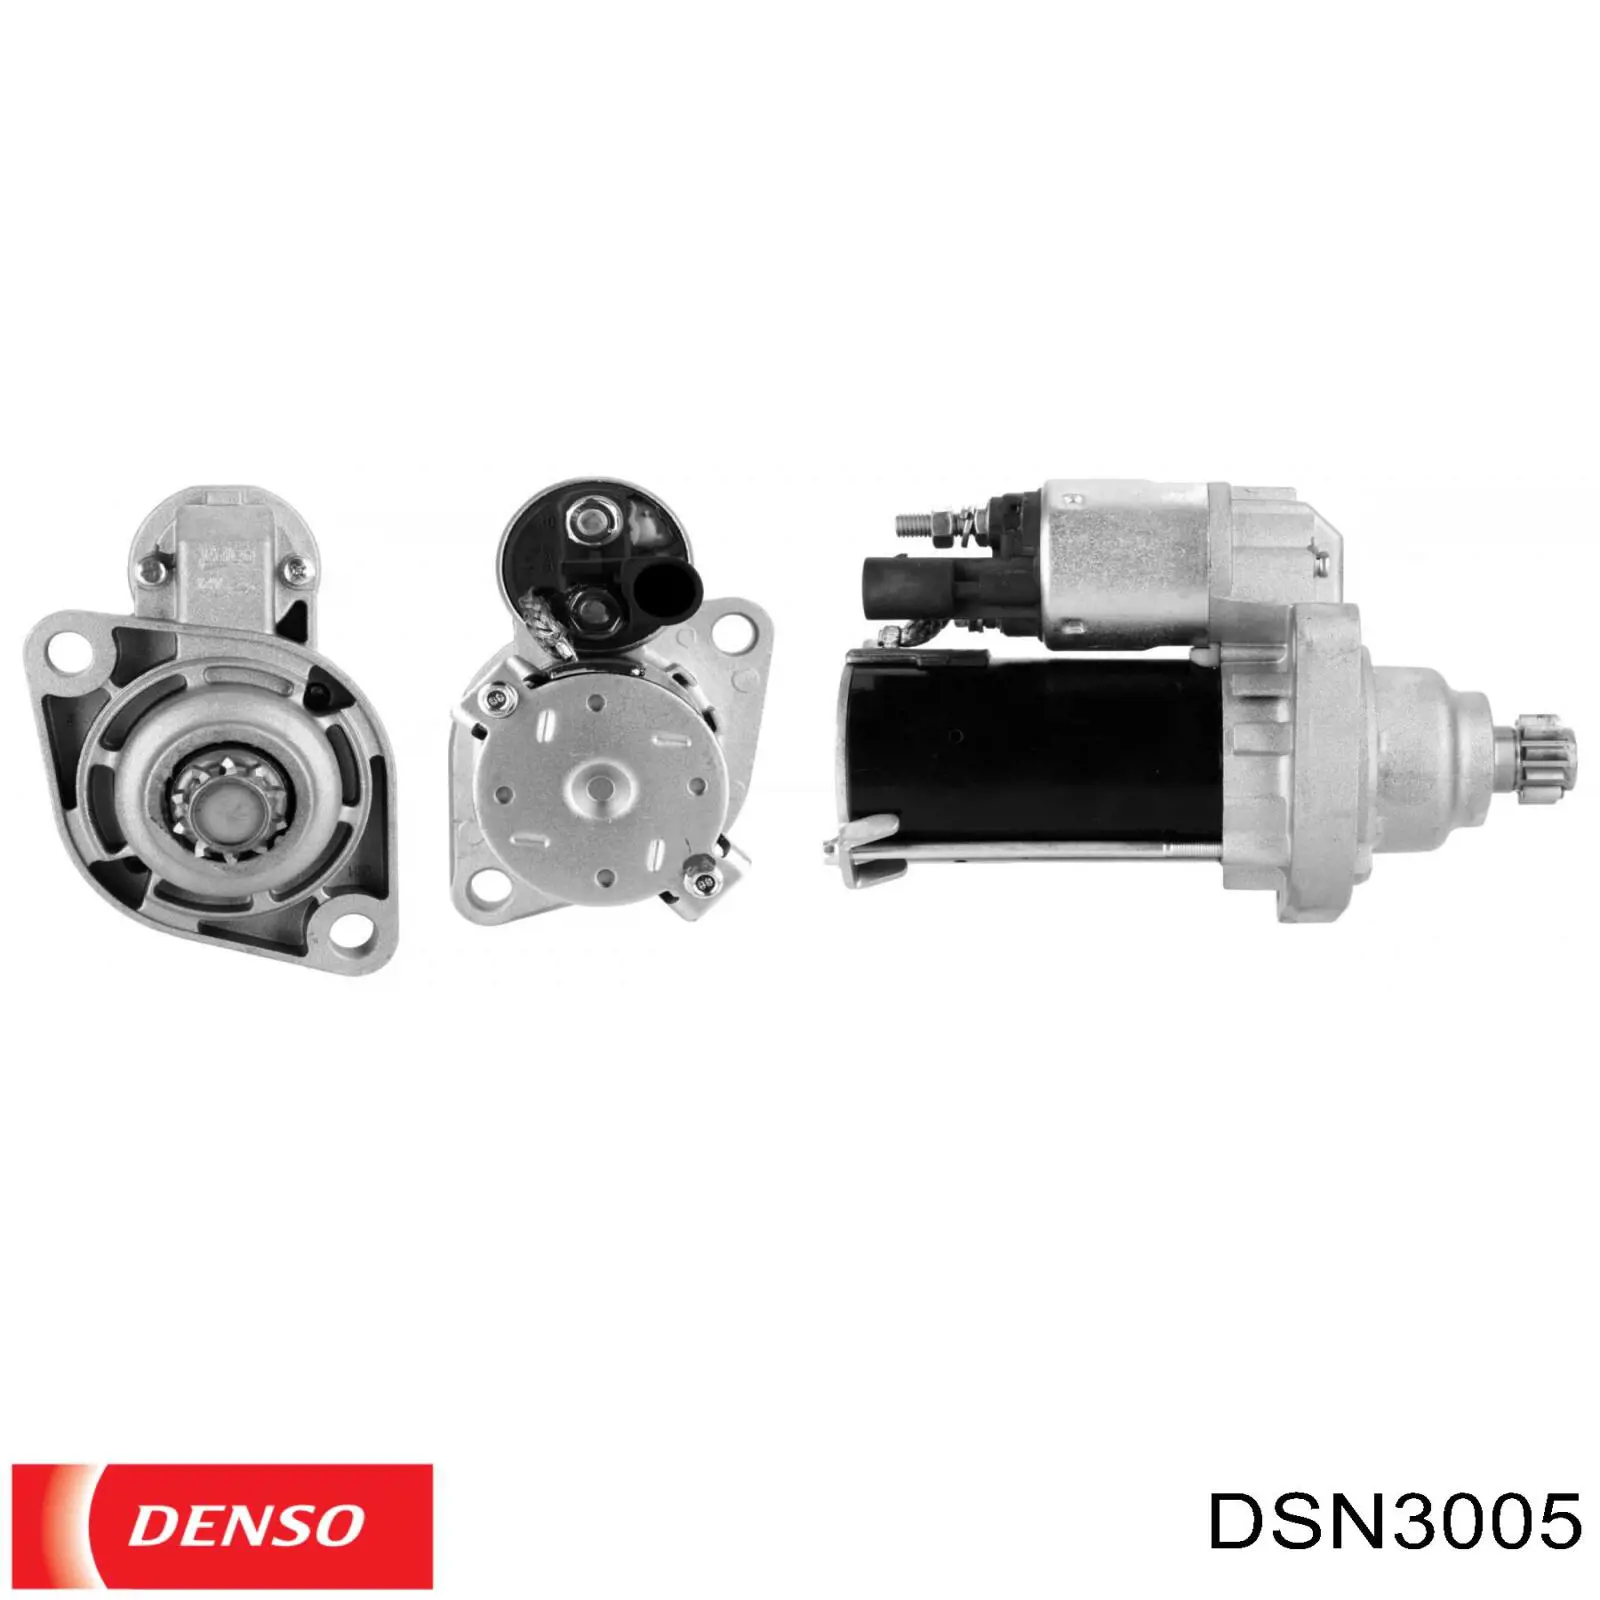 DSN3005 Denso motor de arranque